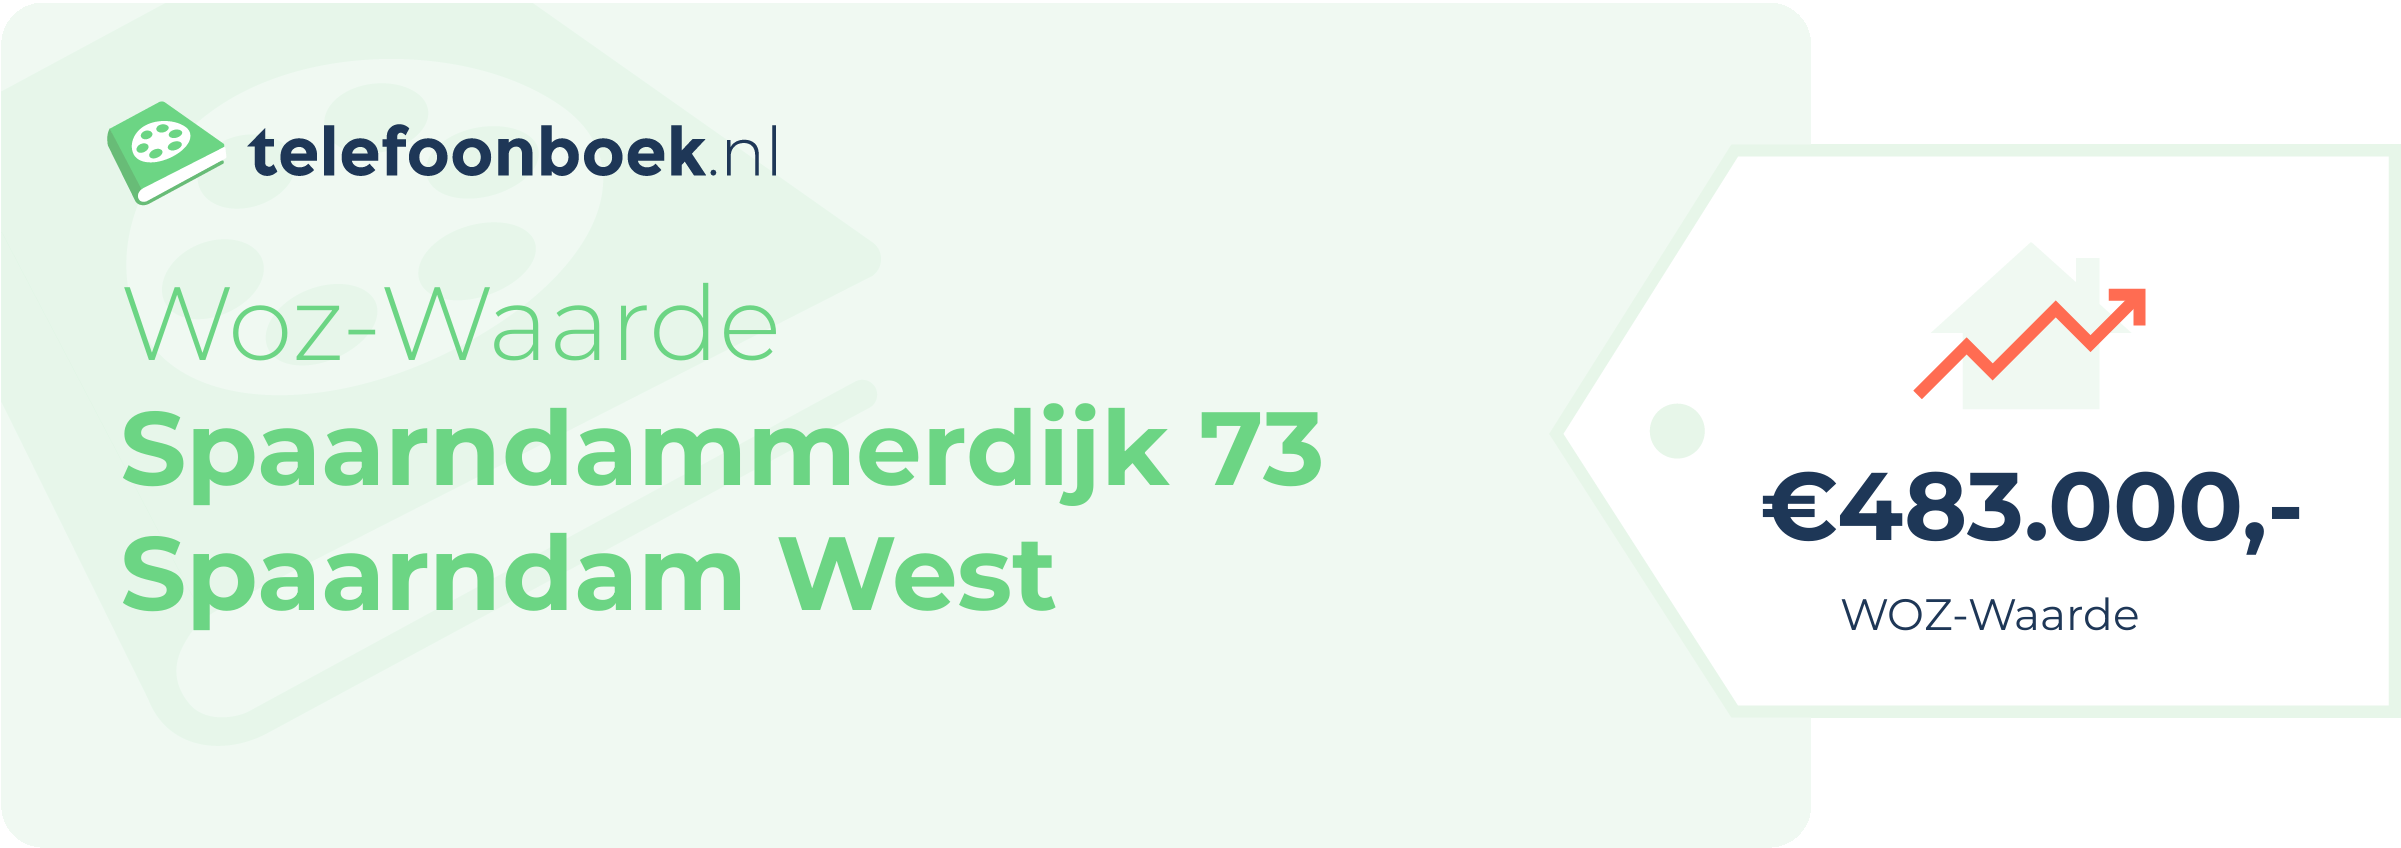 WOZ-waarde Spaarndammerdijk 73 Spaarndam West